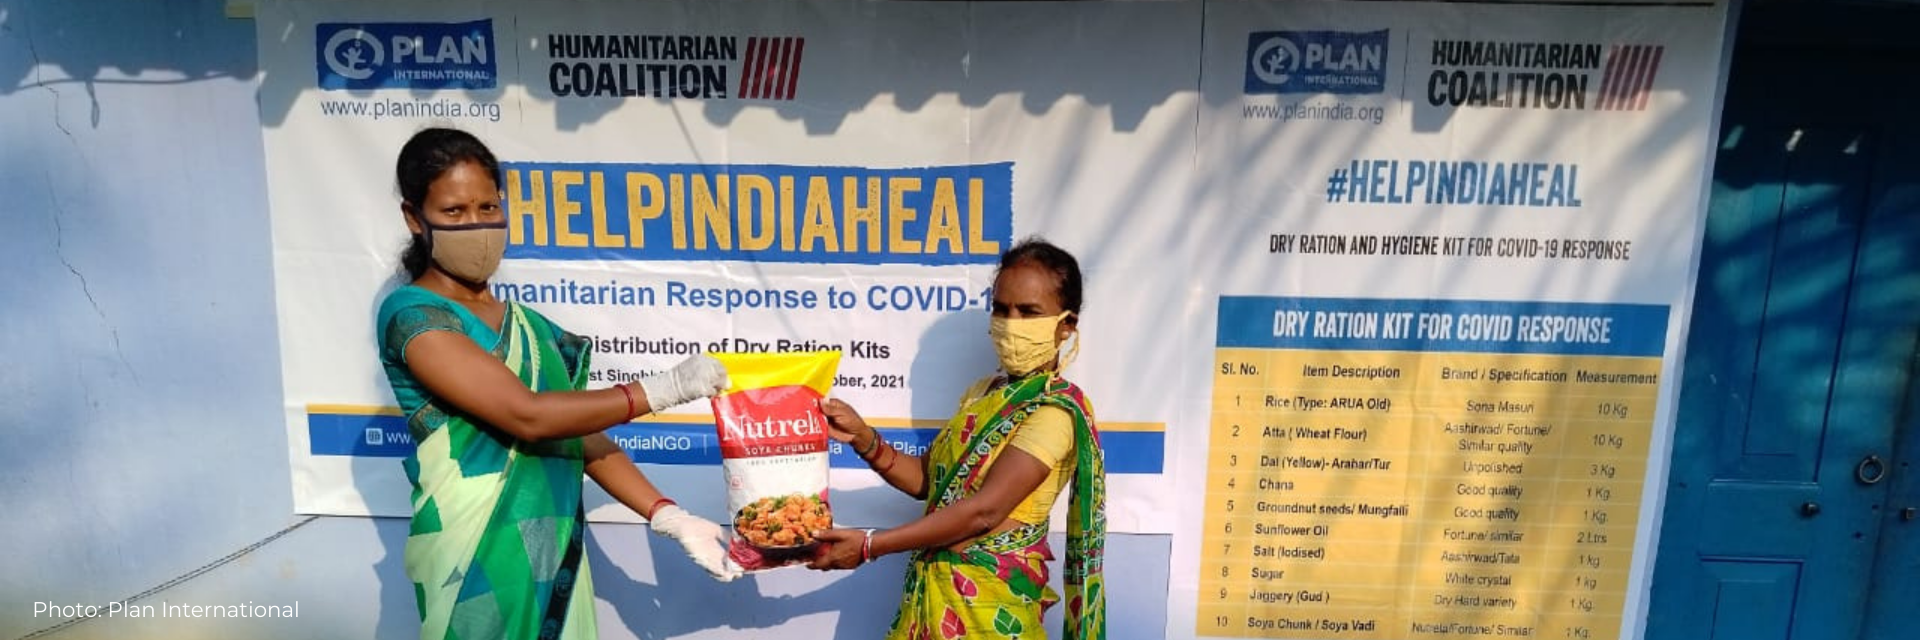 Deux femmes présentent le sac de nourriture offert aux survivants de la COVID-19 en Inde